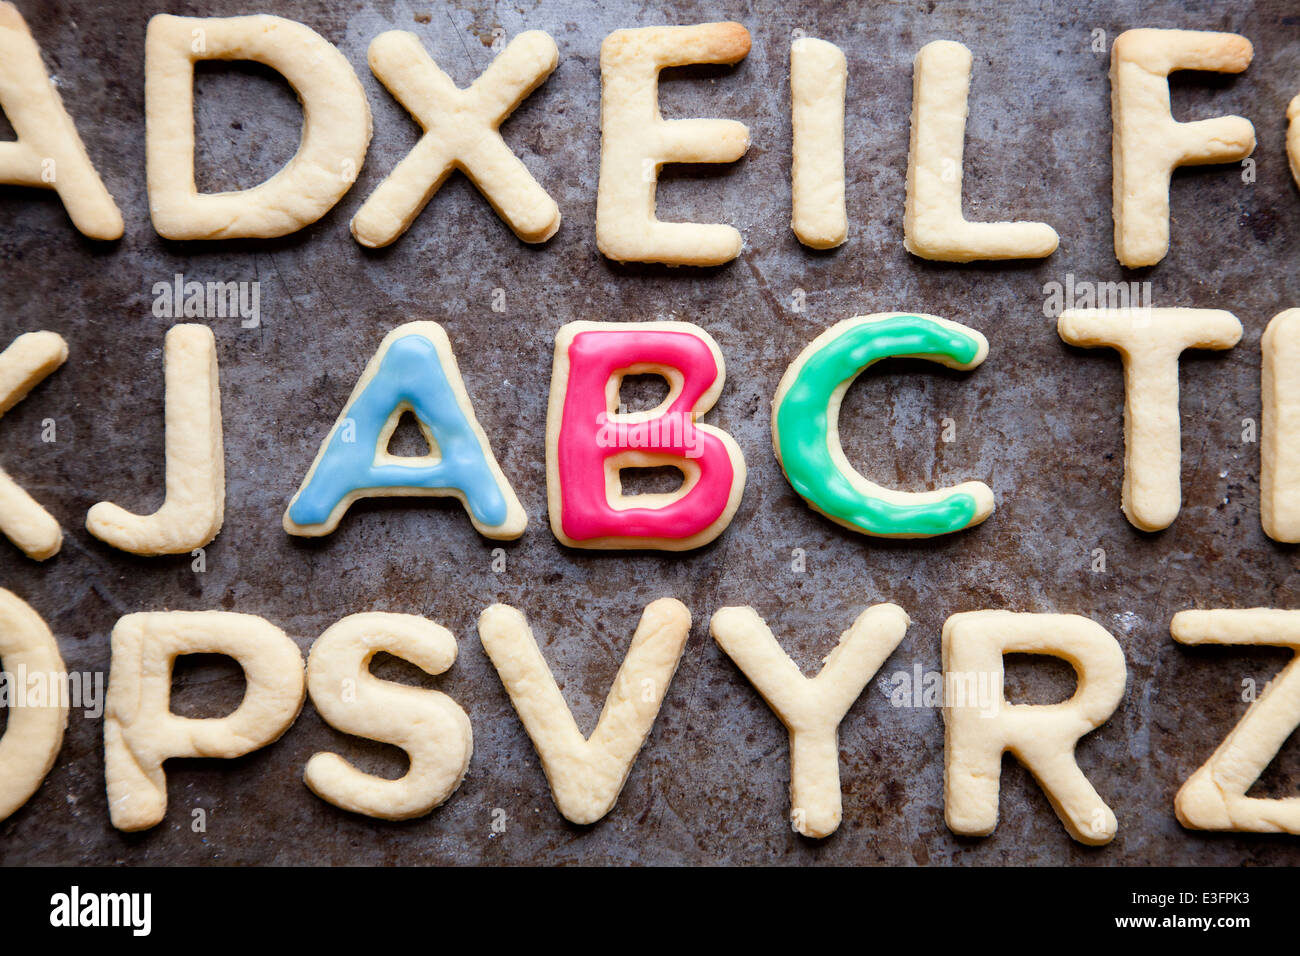 Cookies décorés ABC sur la lèchefrite, close-up Banque D'Images